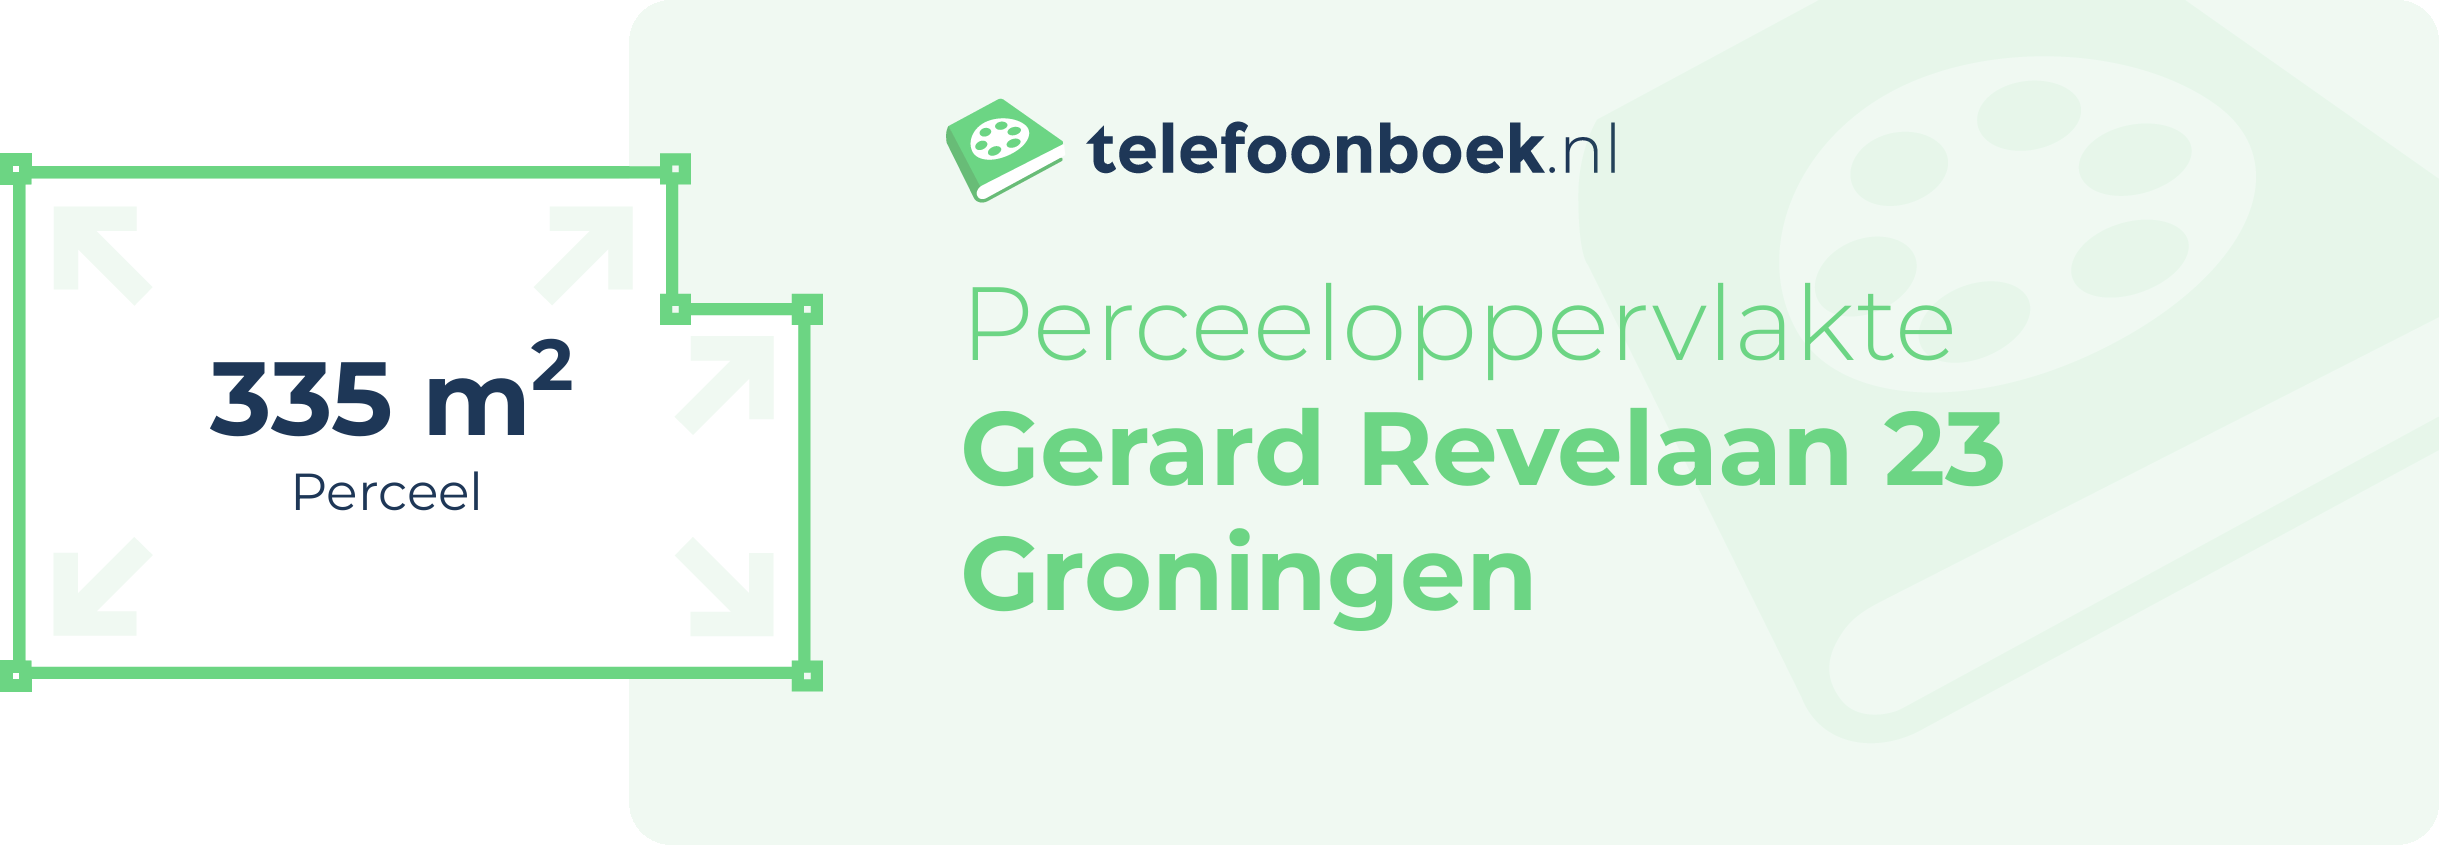 Perceeloppervlakte Gerard Revelaan 23 Groningen